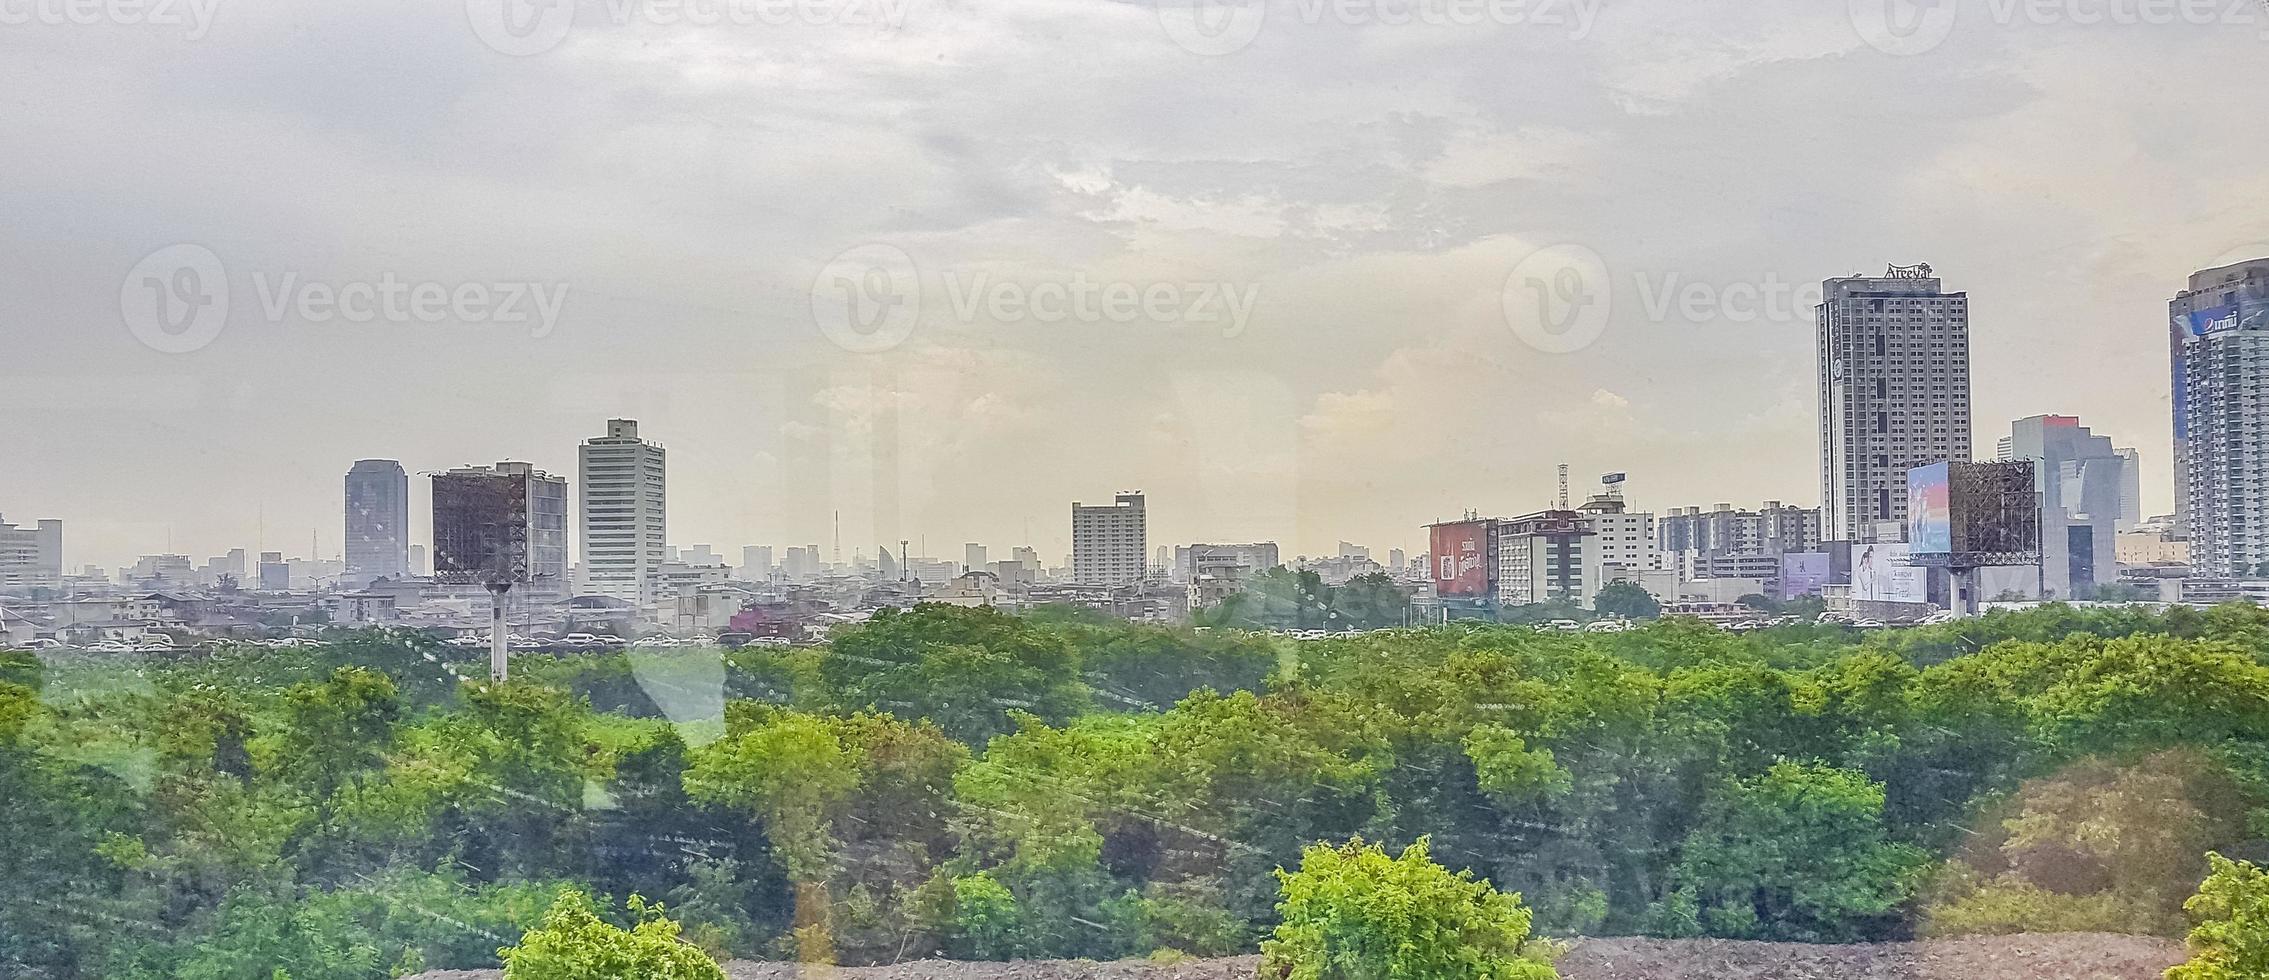 panorama della città bangkok. grattacielo, paesaggio urbano della capitale della thailandia. foto